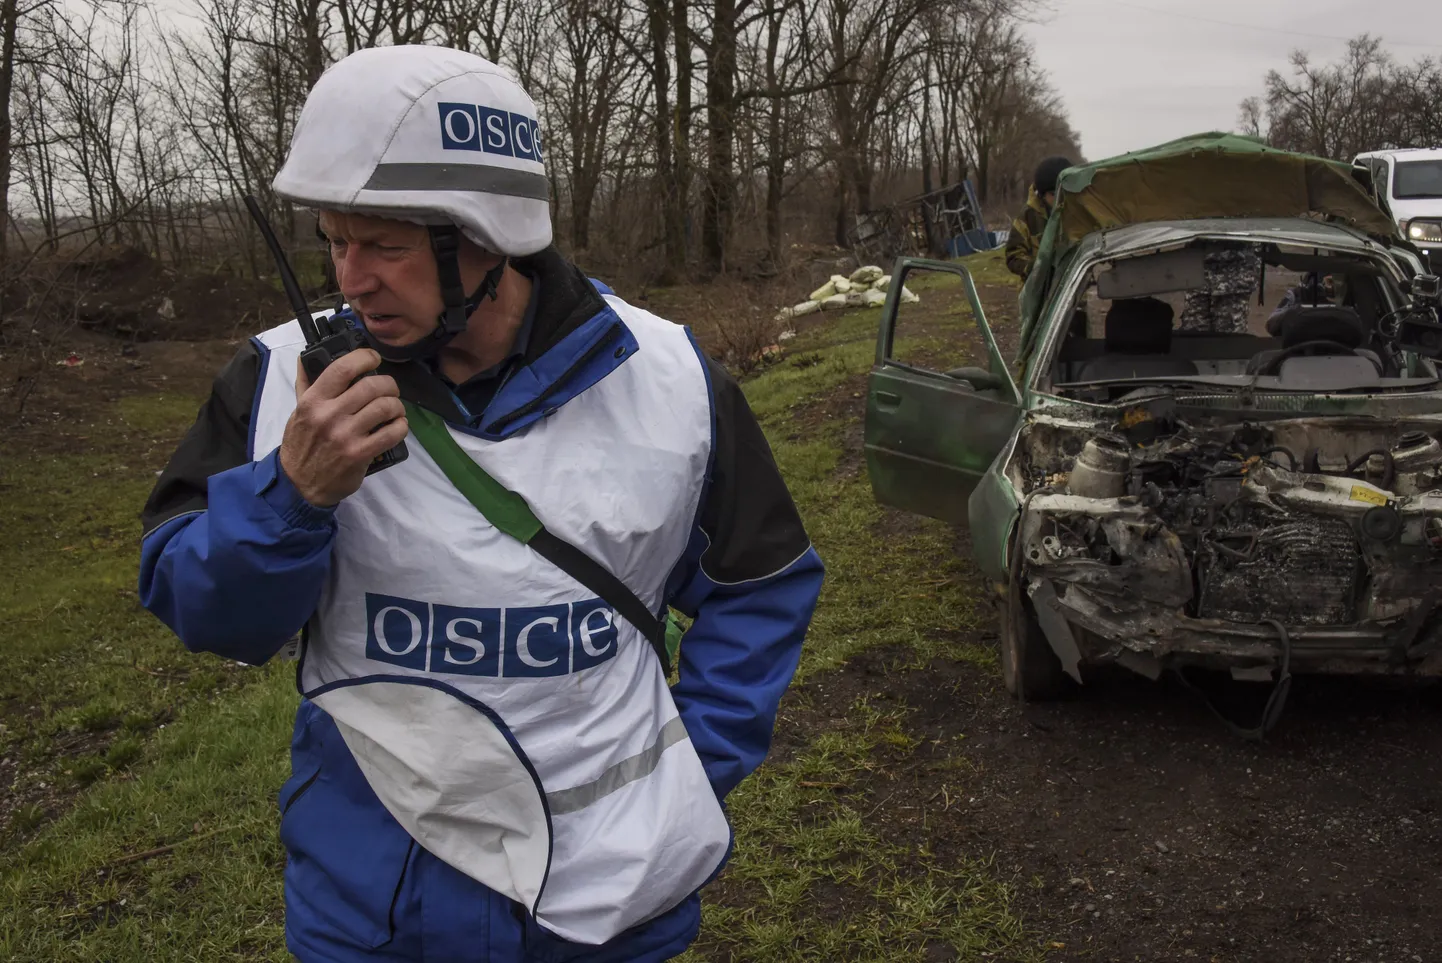 OSCE vaatleja Ukrainas